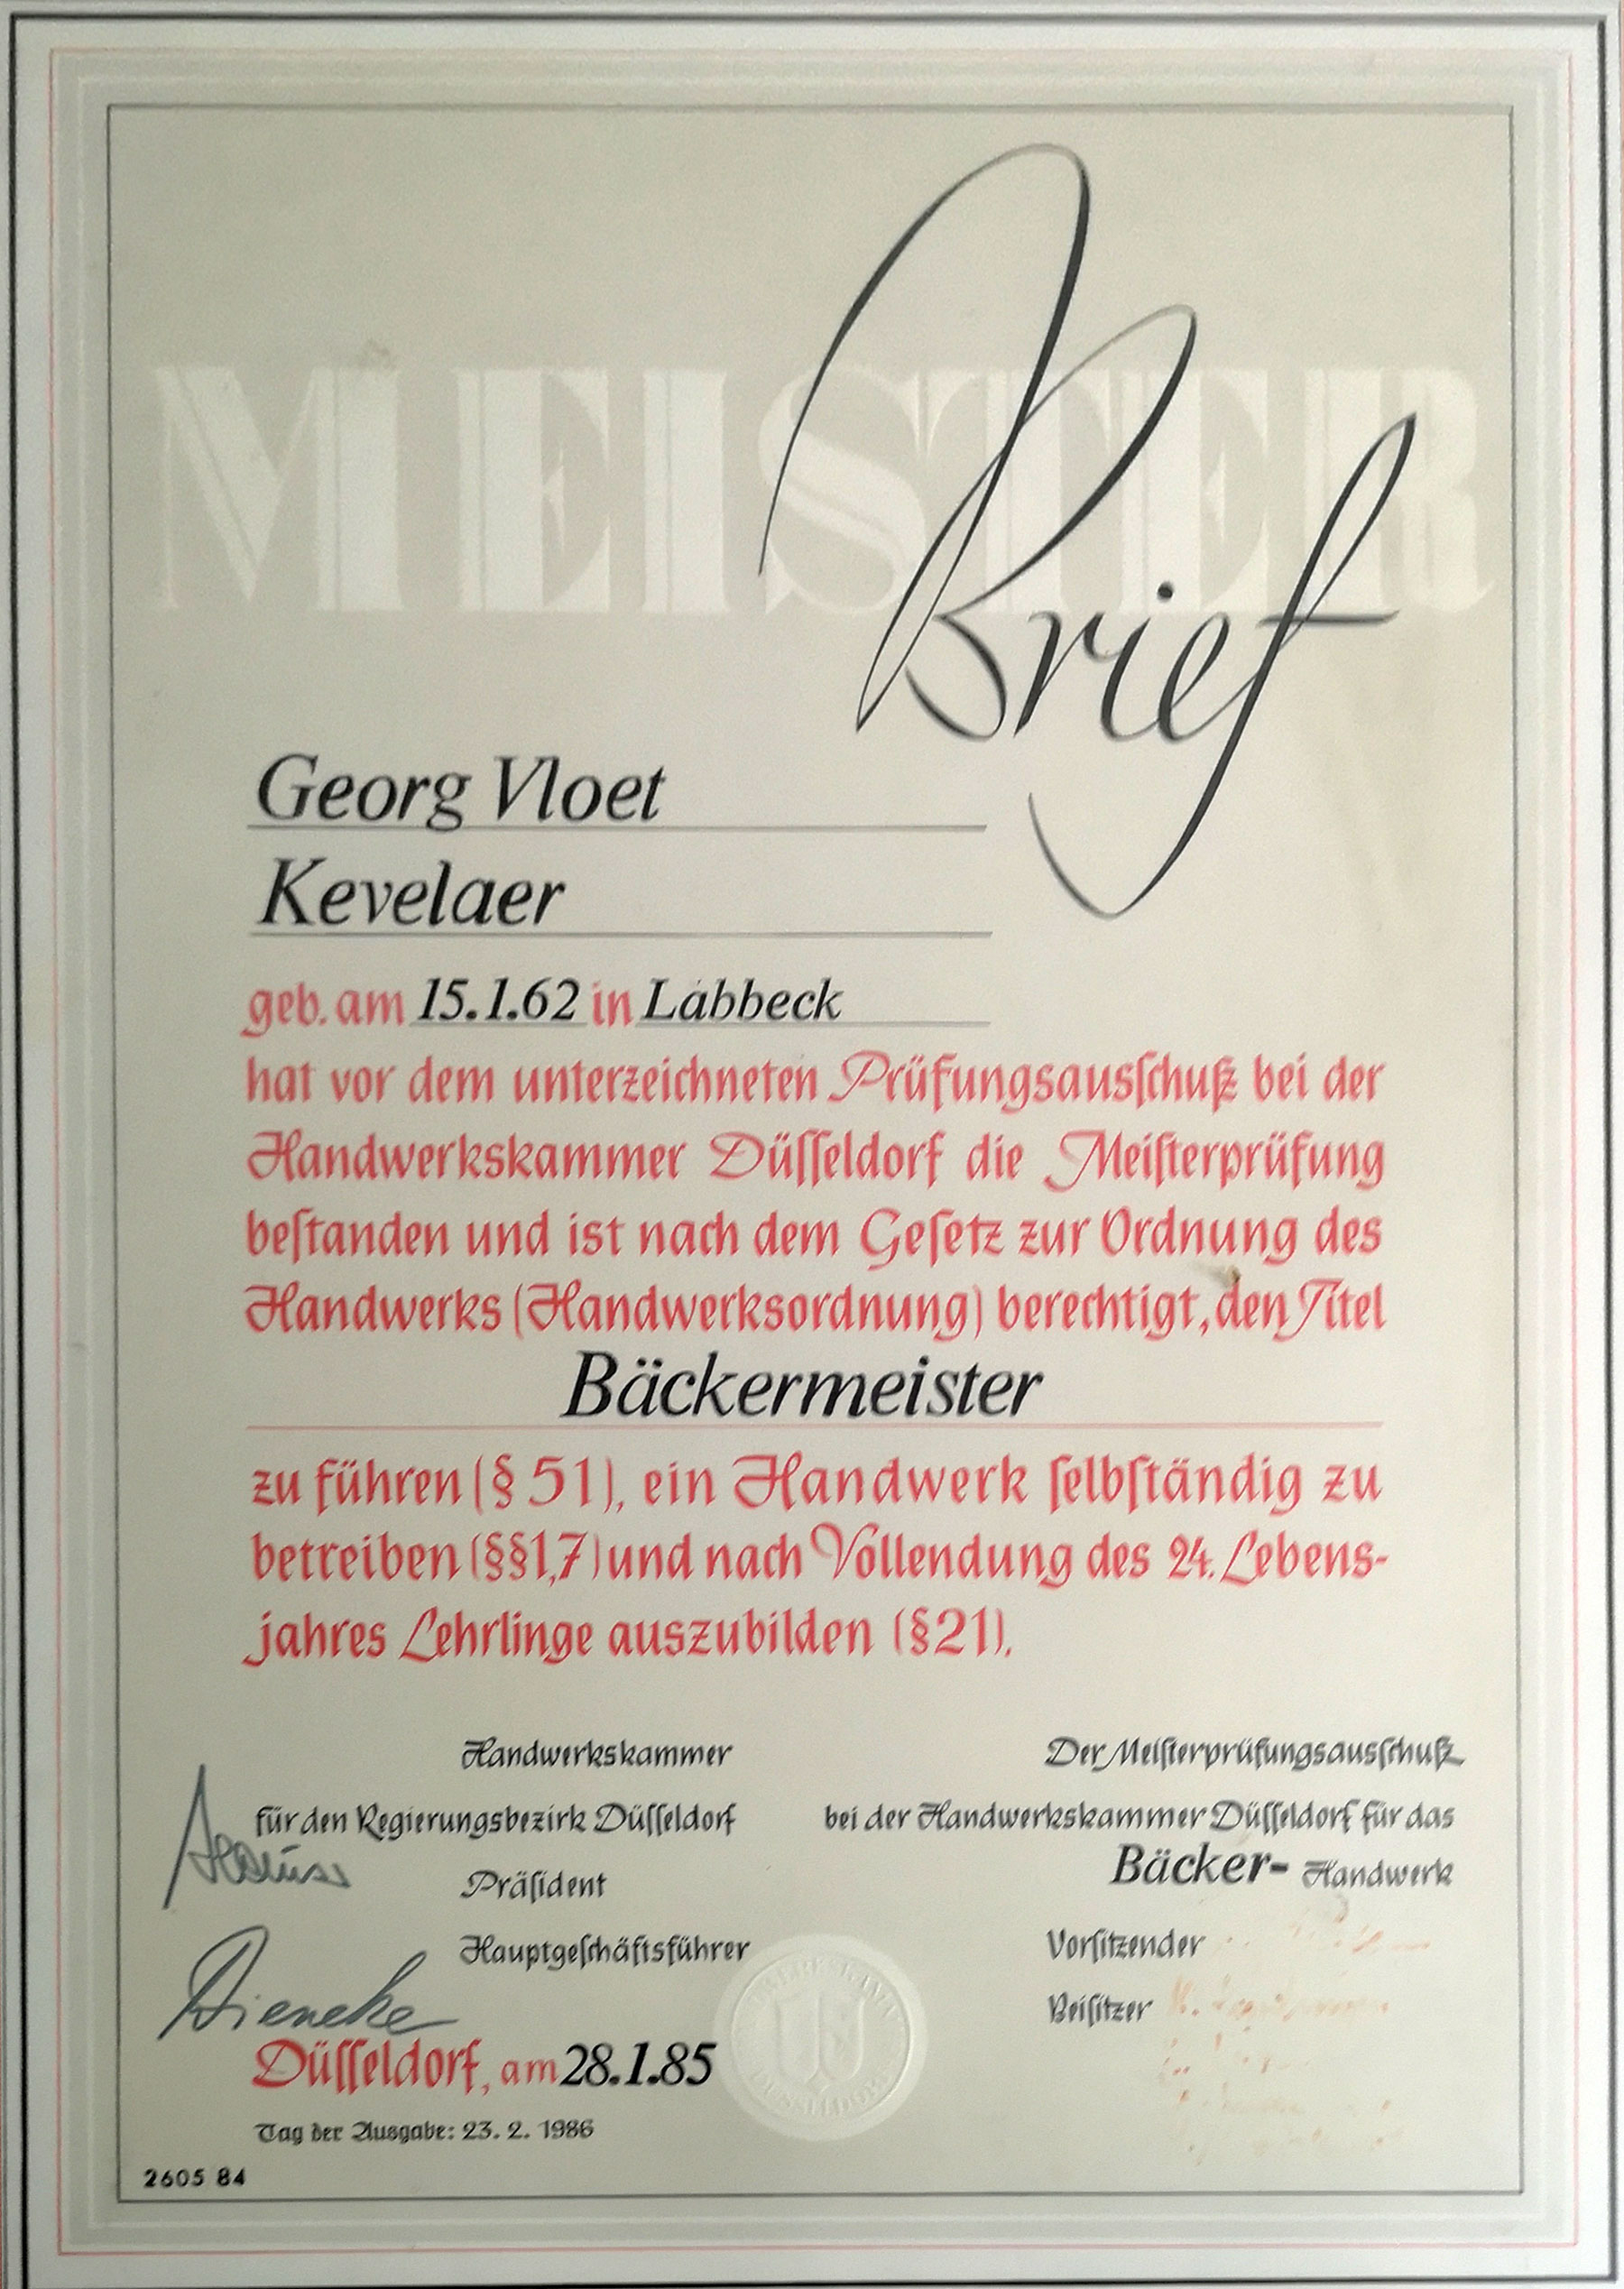 Qualität vom Gründer des Cafe Vloet in Kevelaer - Meisterbrief aus dem jahre 1961